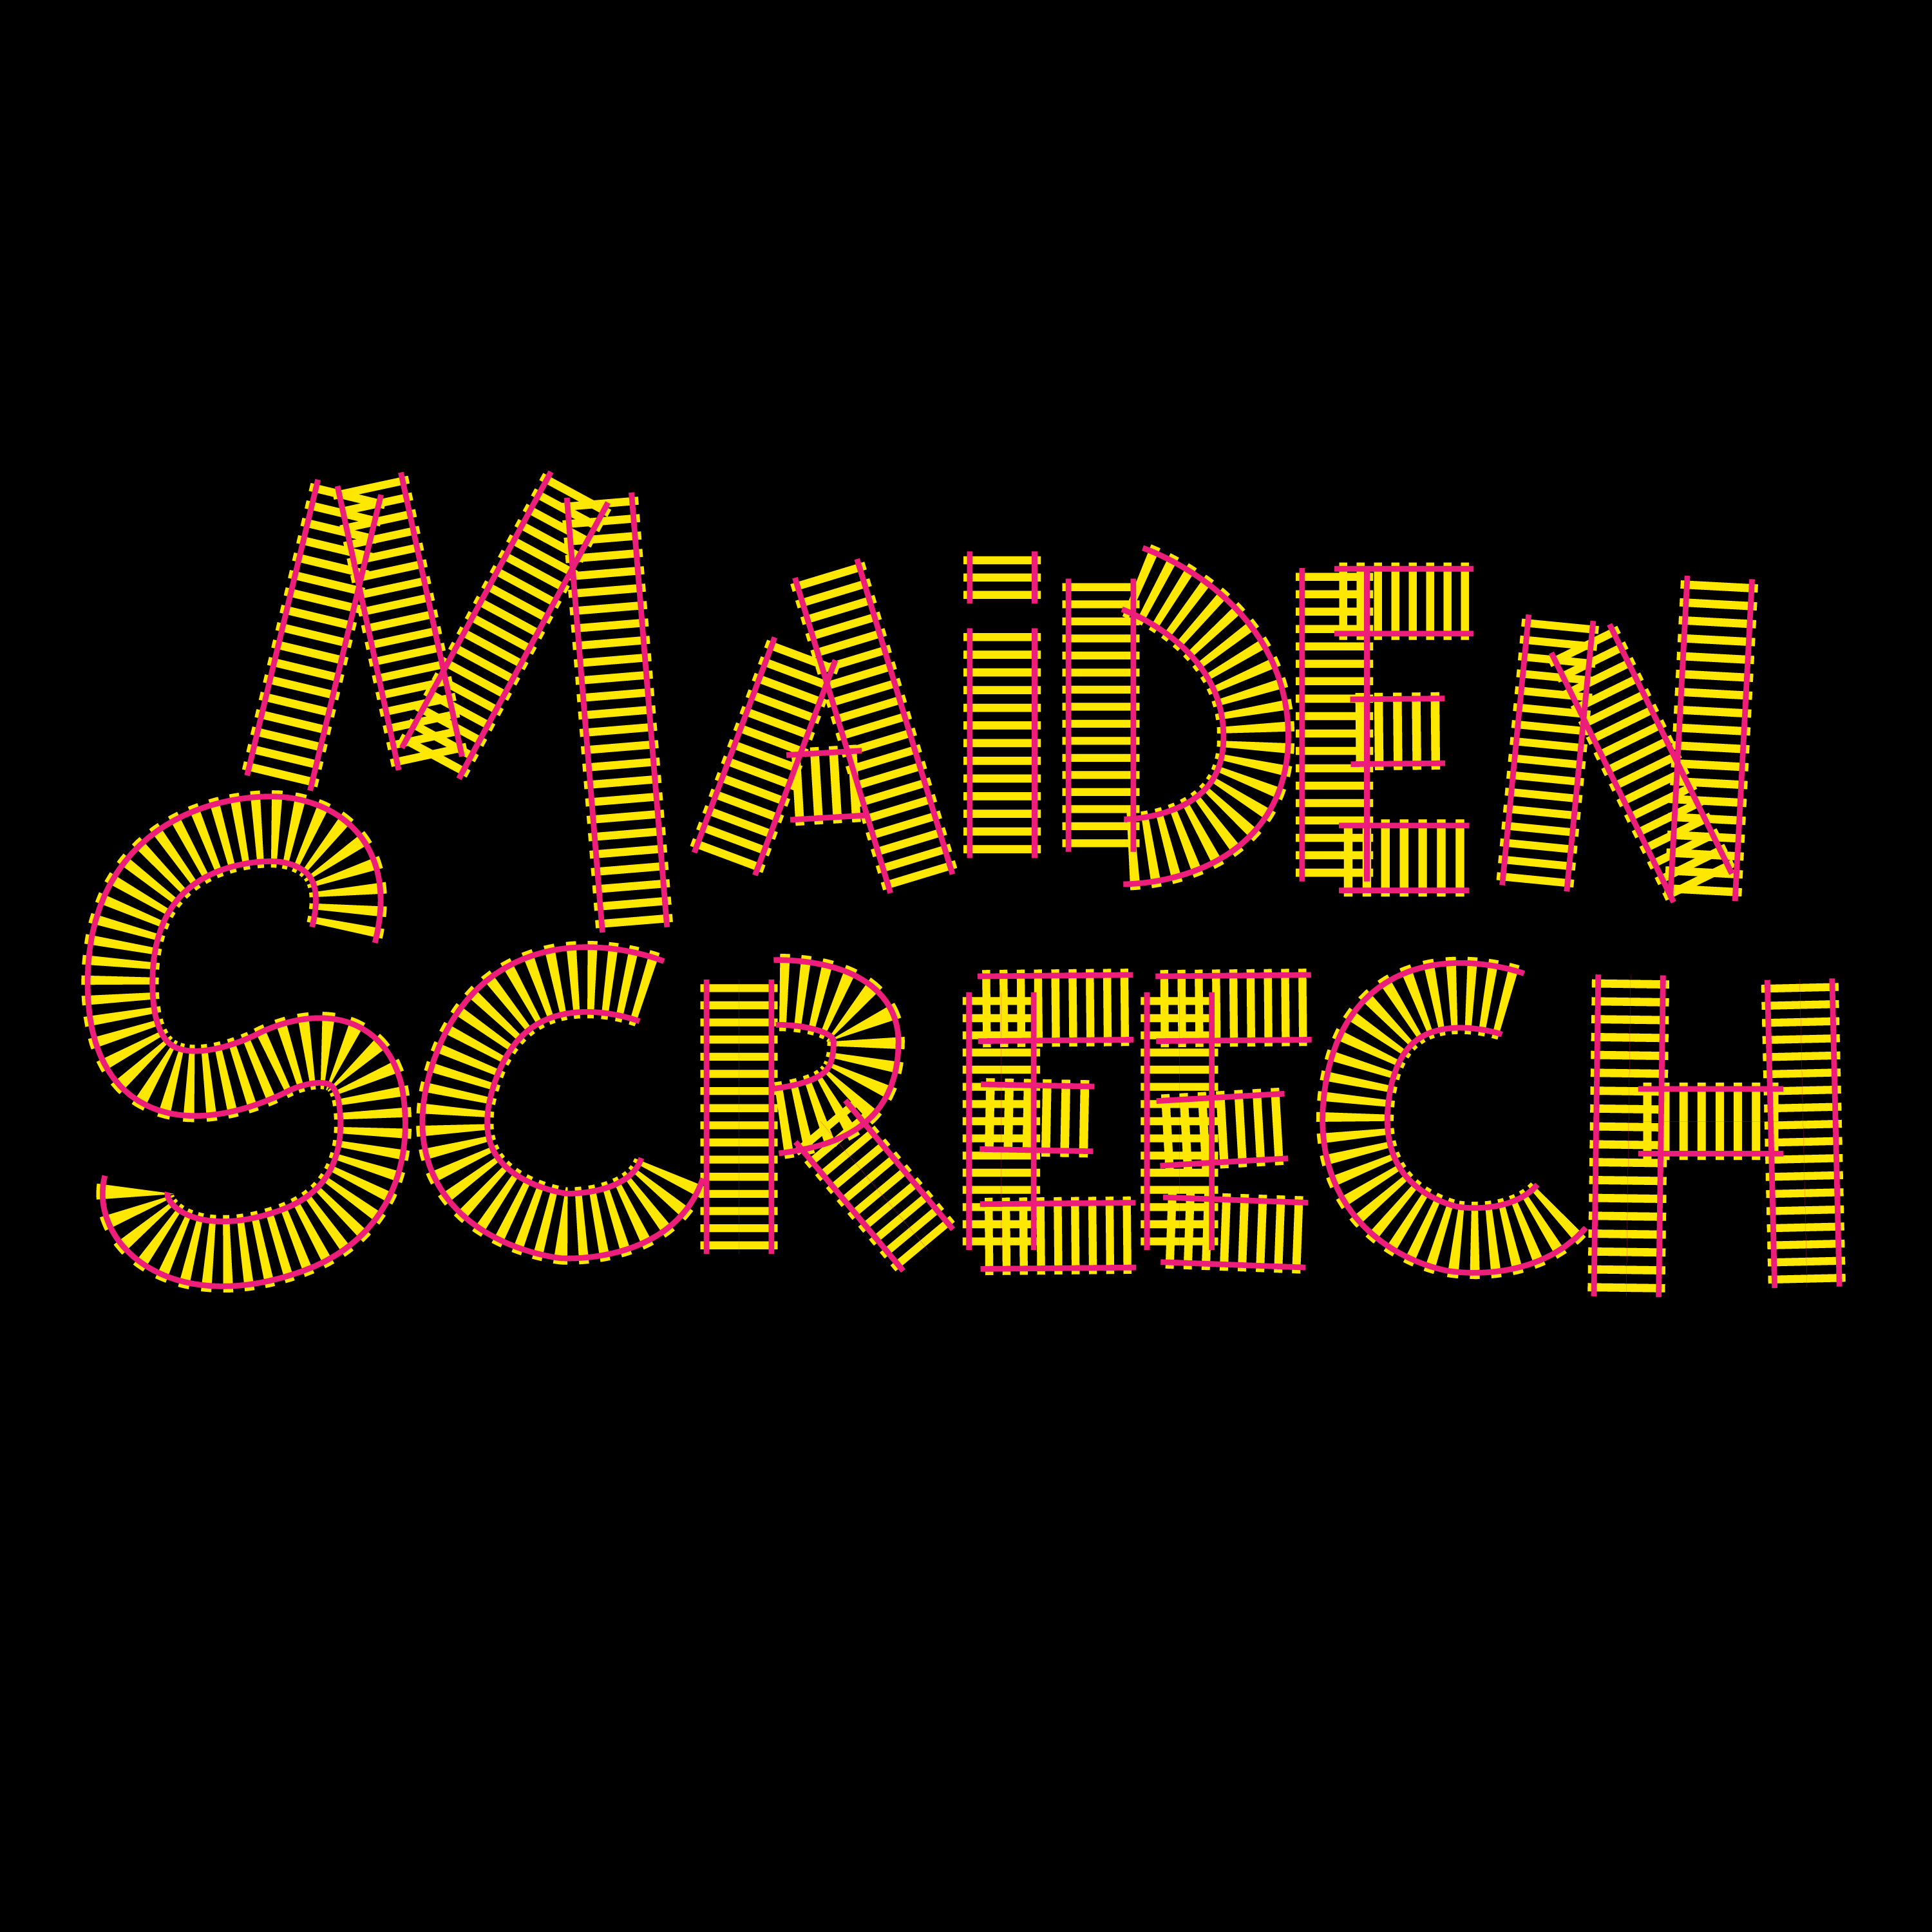 Maiden Screech